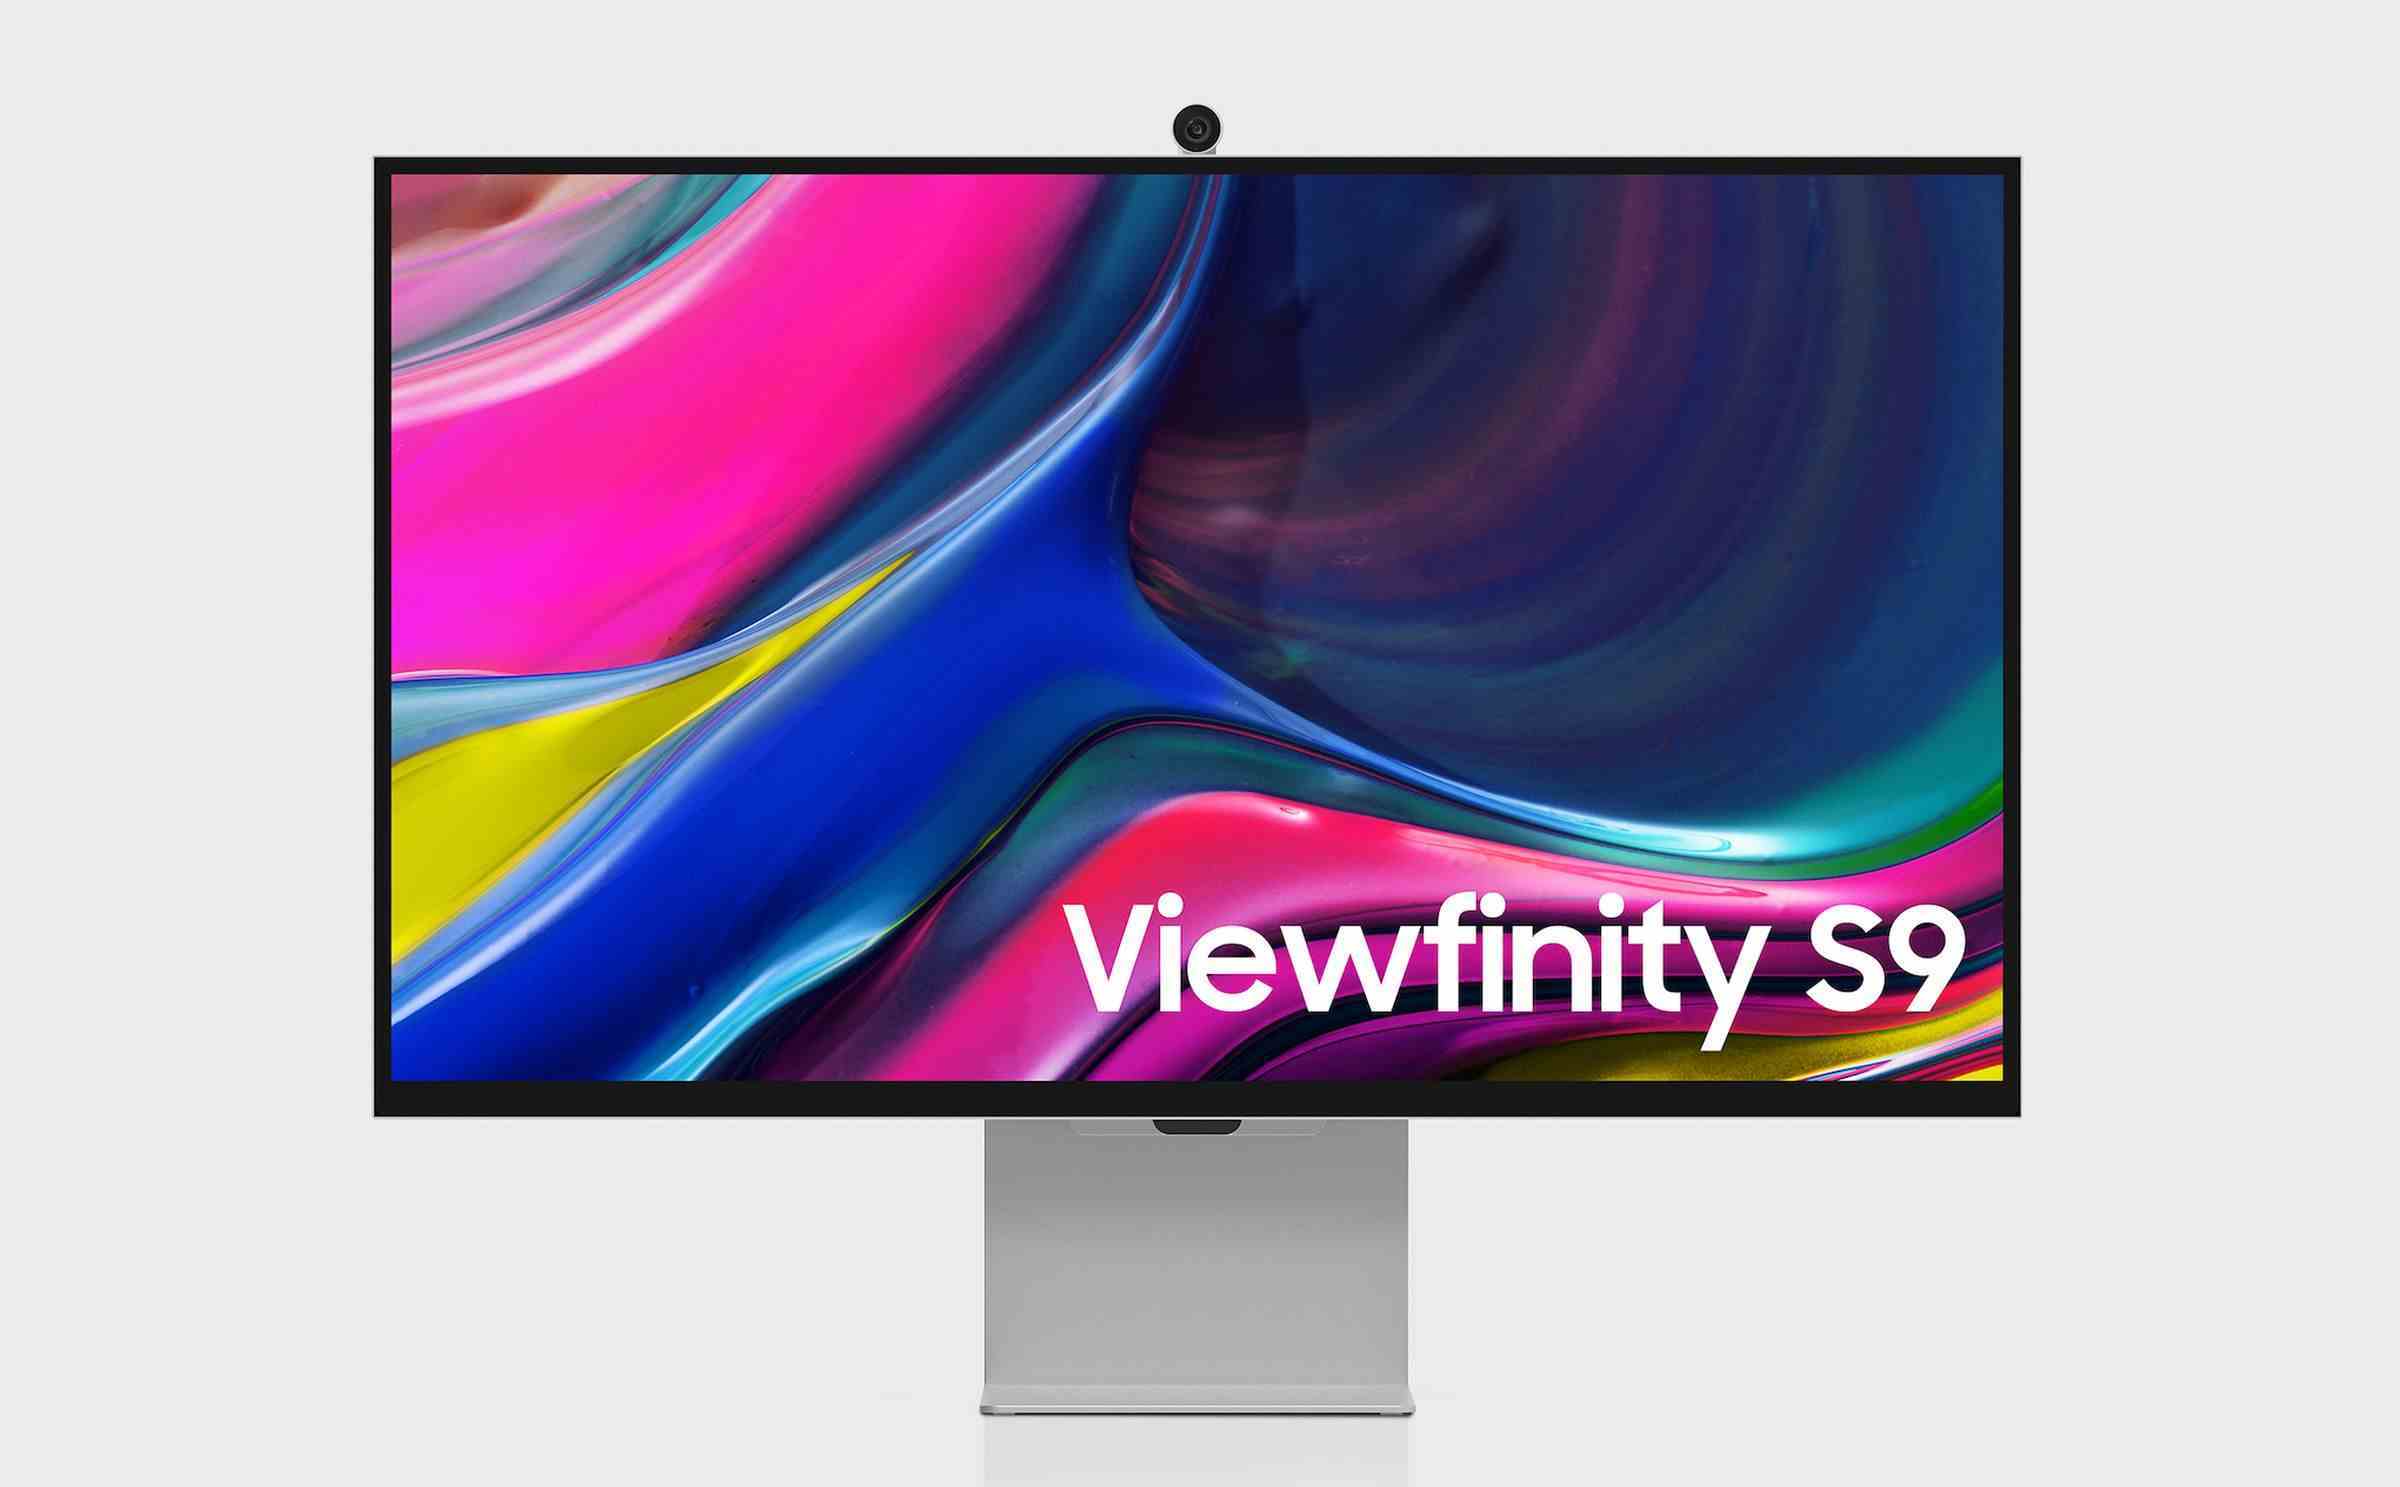 Samsung'un ViewFinity S9 monitörünün pazarlama görseli.